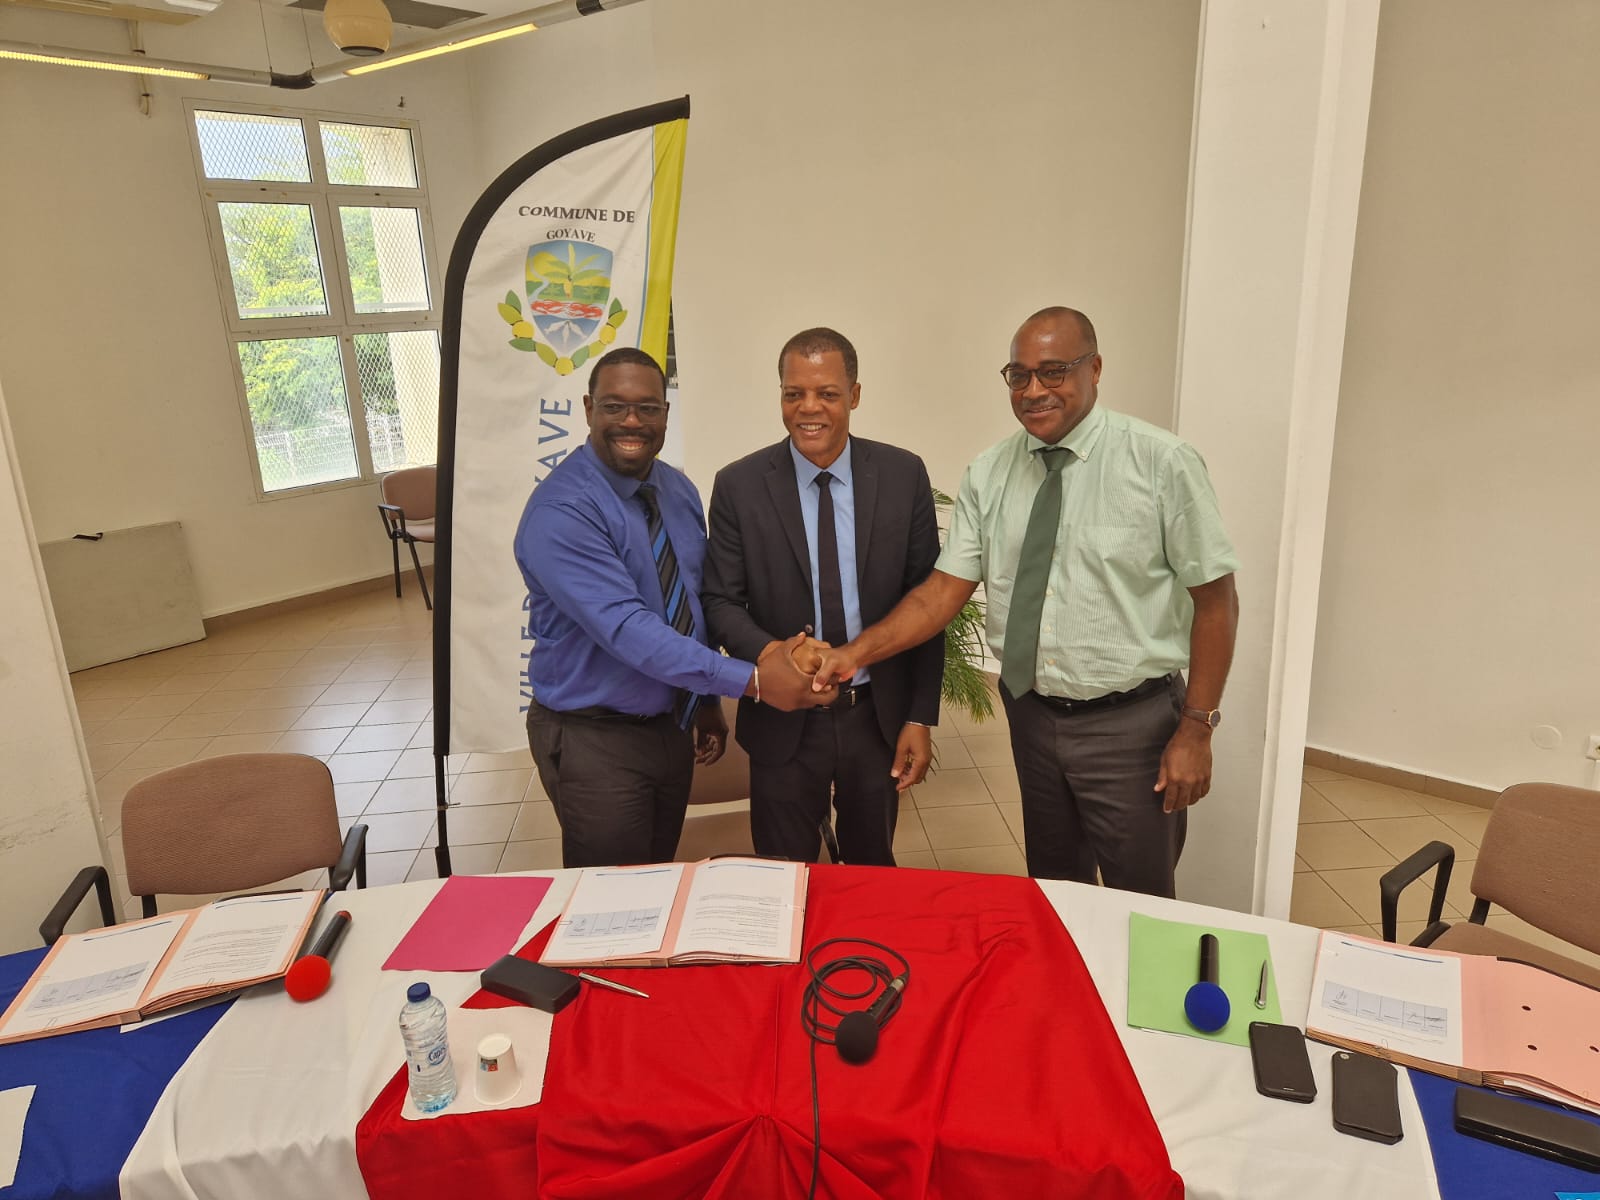     La ville de Goyave et la CAF signent une convention de partenariat

